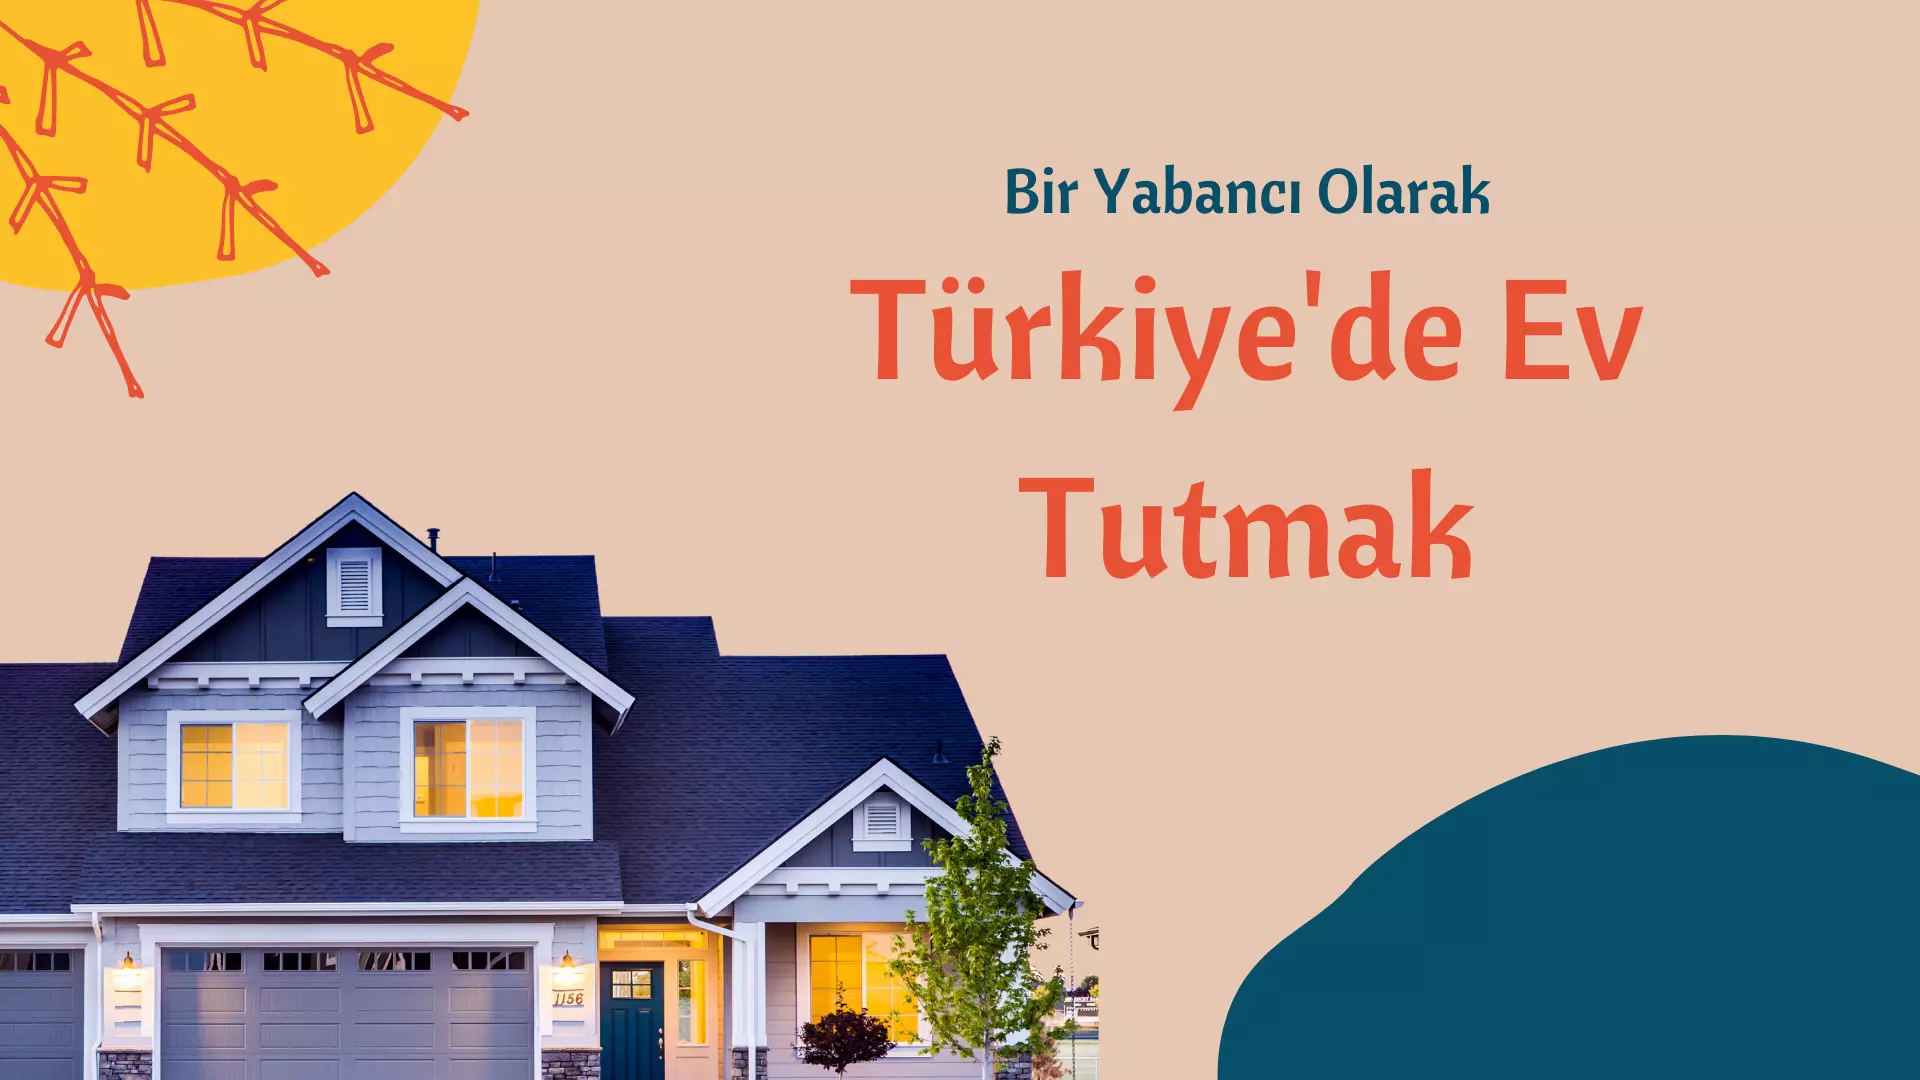 Bir Yabancı Olarak Türkiye'de Yaşamak Ve Ev Tutmak